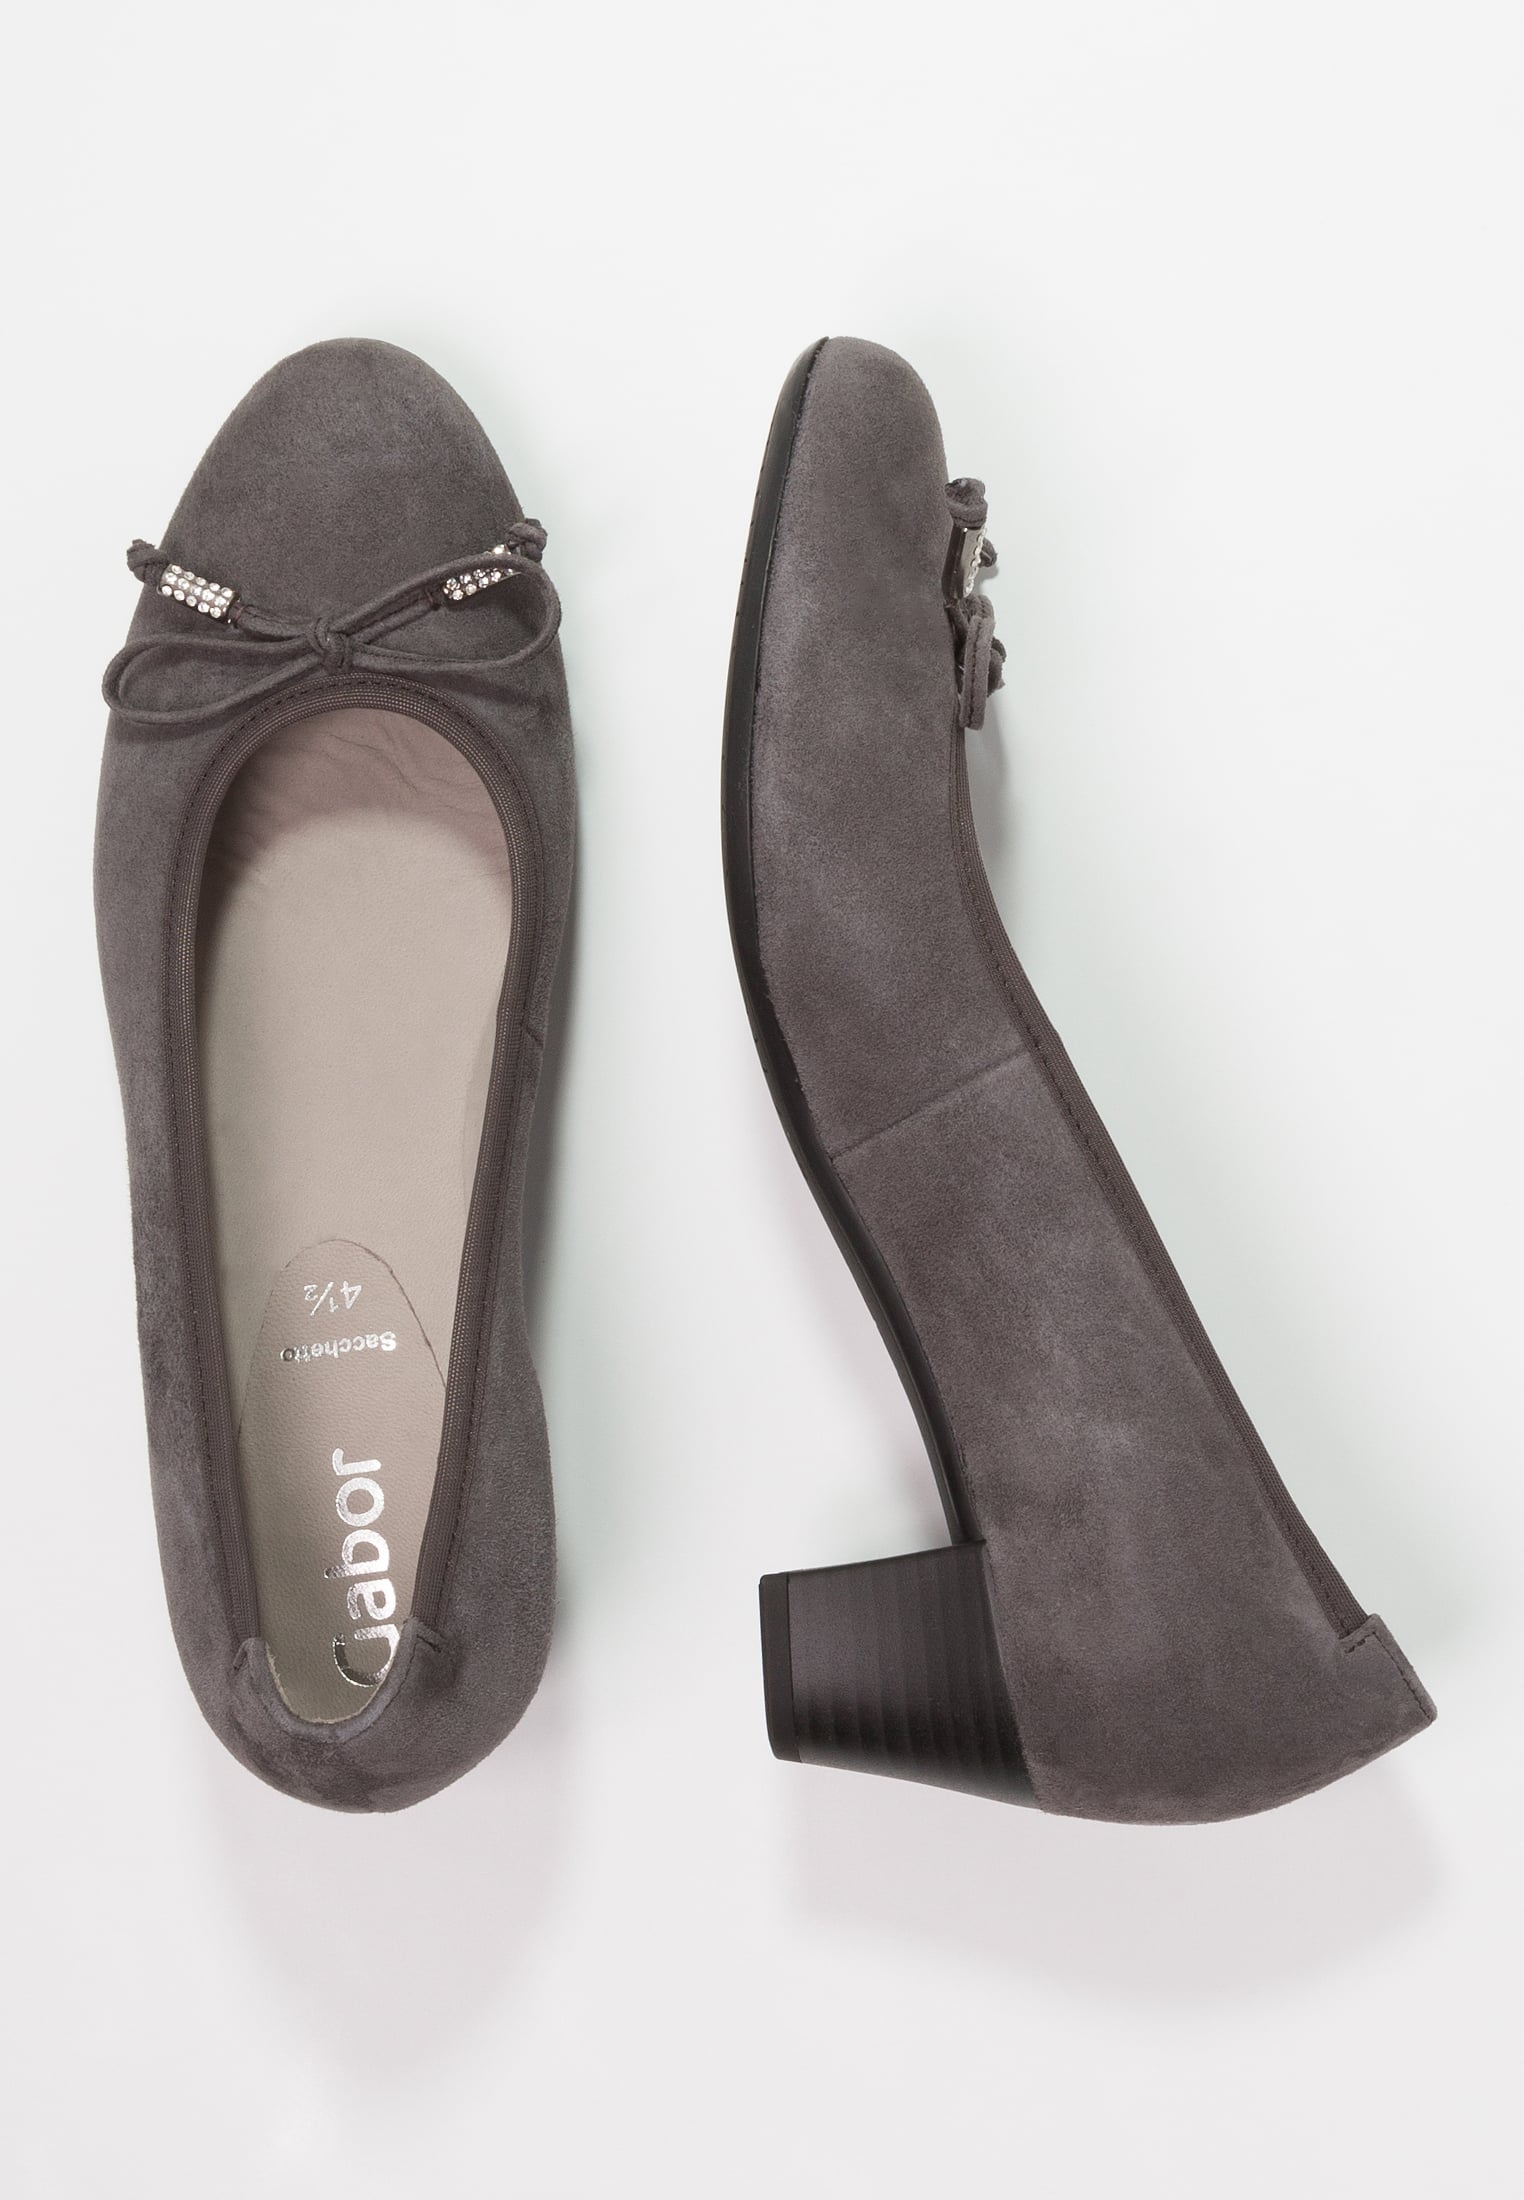 嘉宝(德国女鞋品牌) gabor 女鞋 高跟鞋 - dark grey